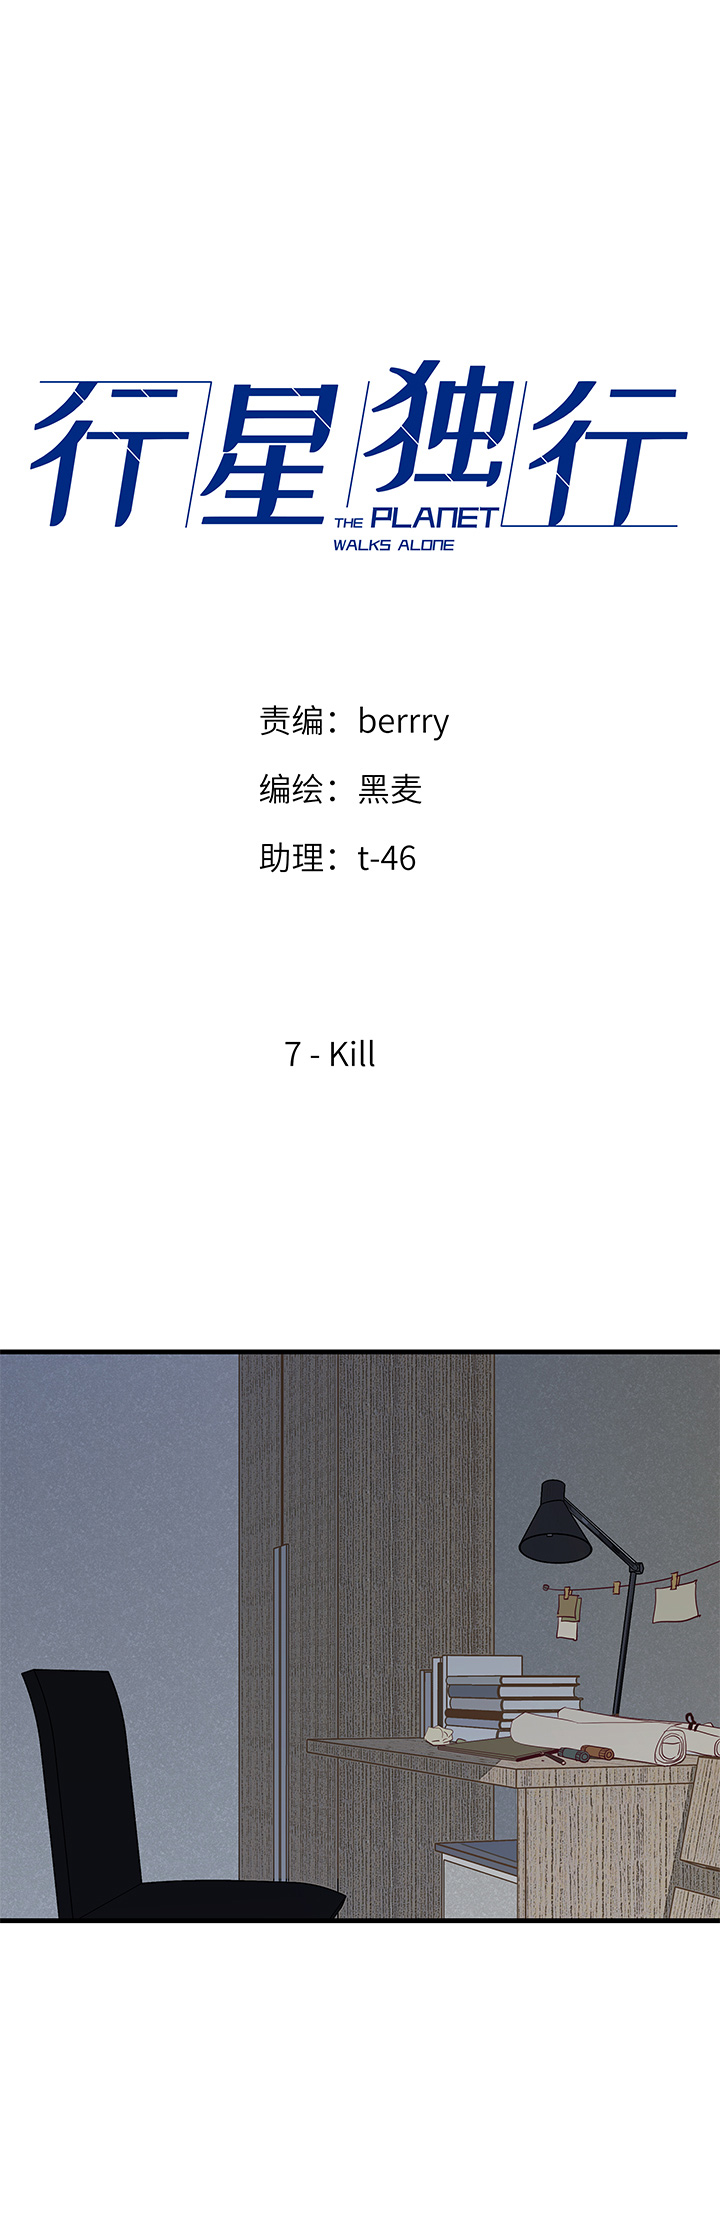 行星独行 - 07 Kill - 1